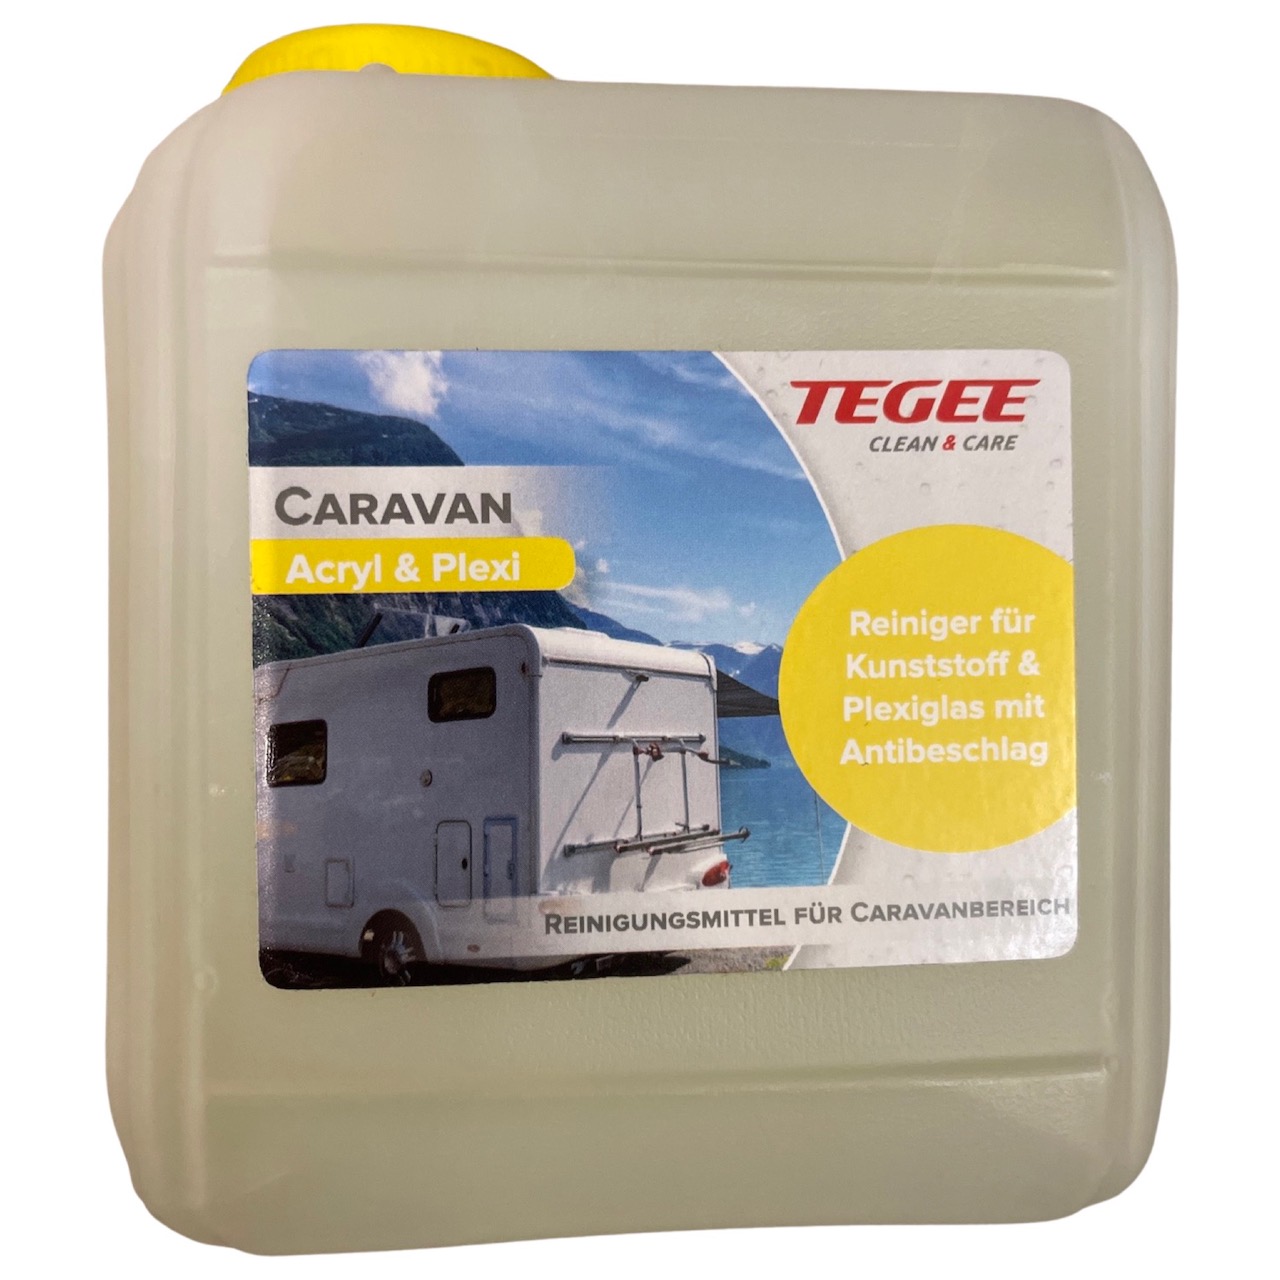 Tegee Caravan Acryl & Plexi 1 Liter